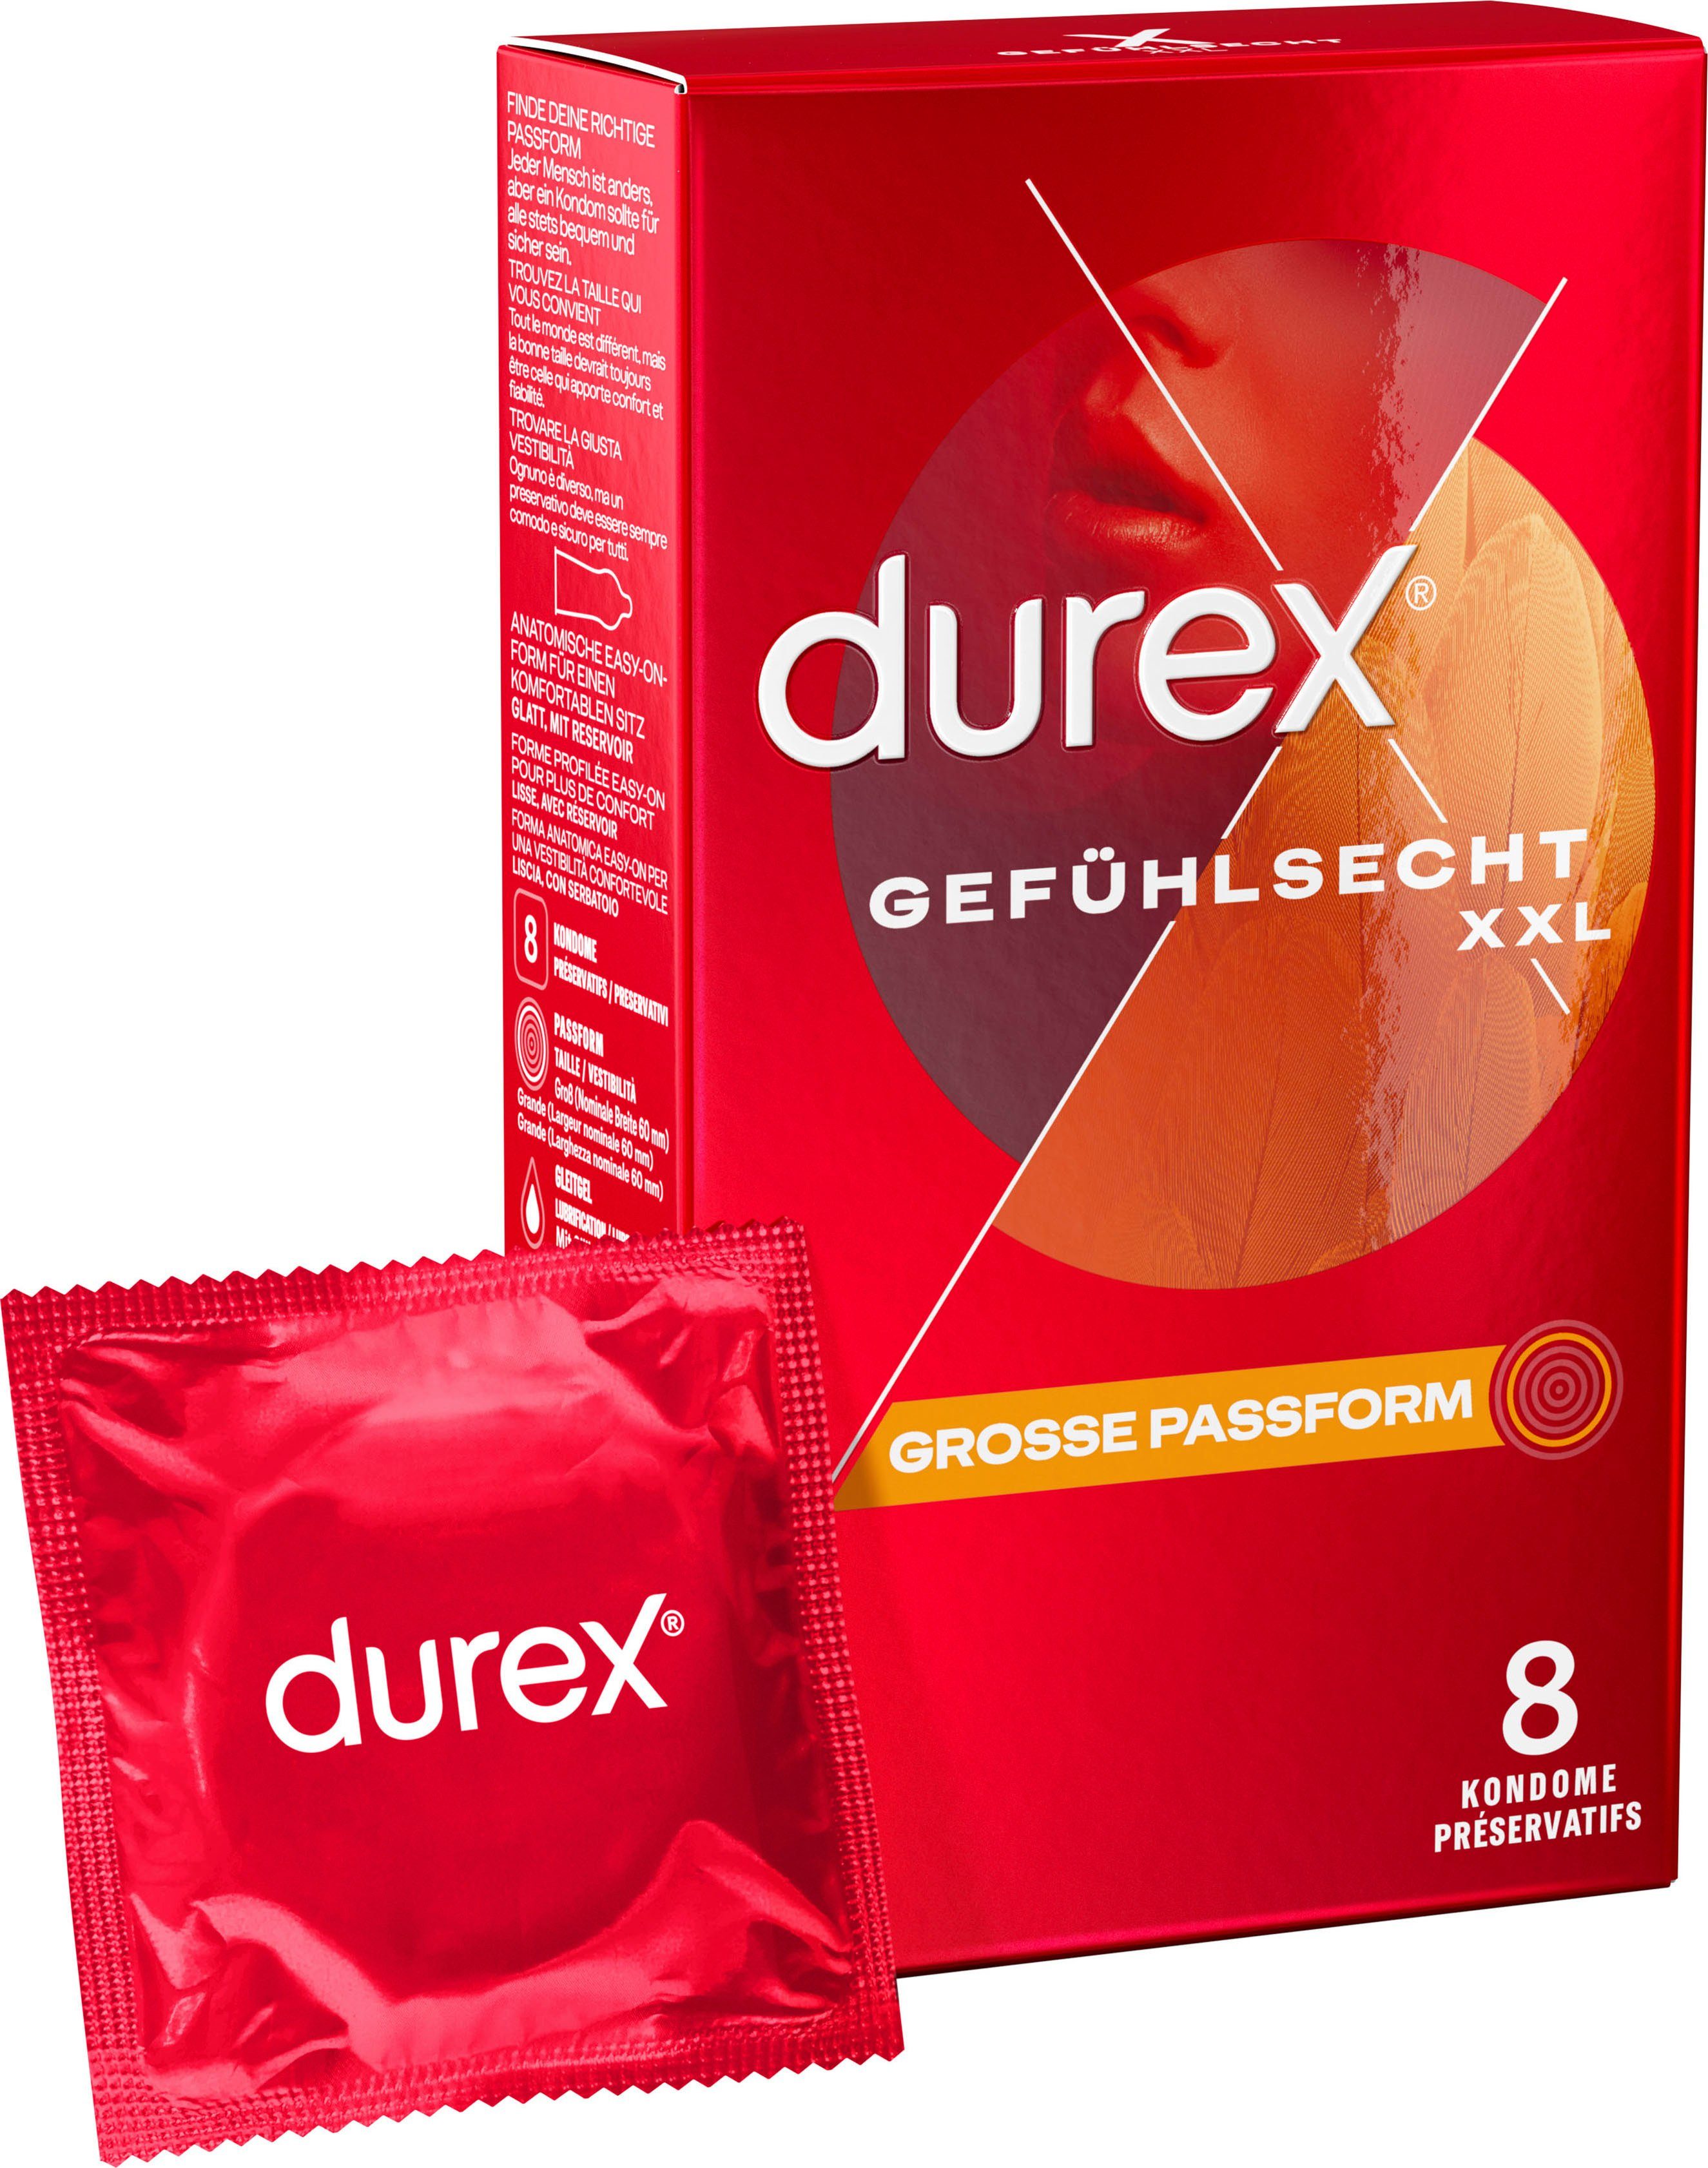 durex XXL-Kondome Gefühlsecht Extra Groß Packung, 8 St., Dünn für ein intensives Gefühl und innige Zweisamkeit, große Passform